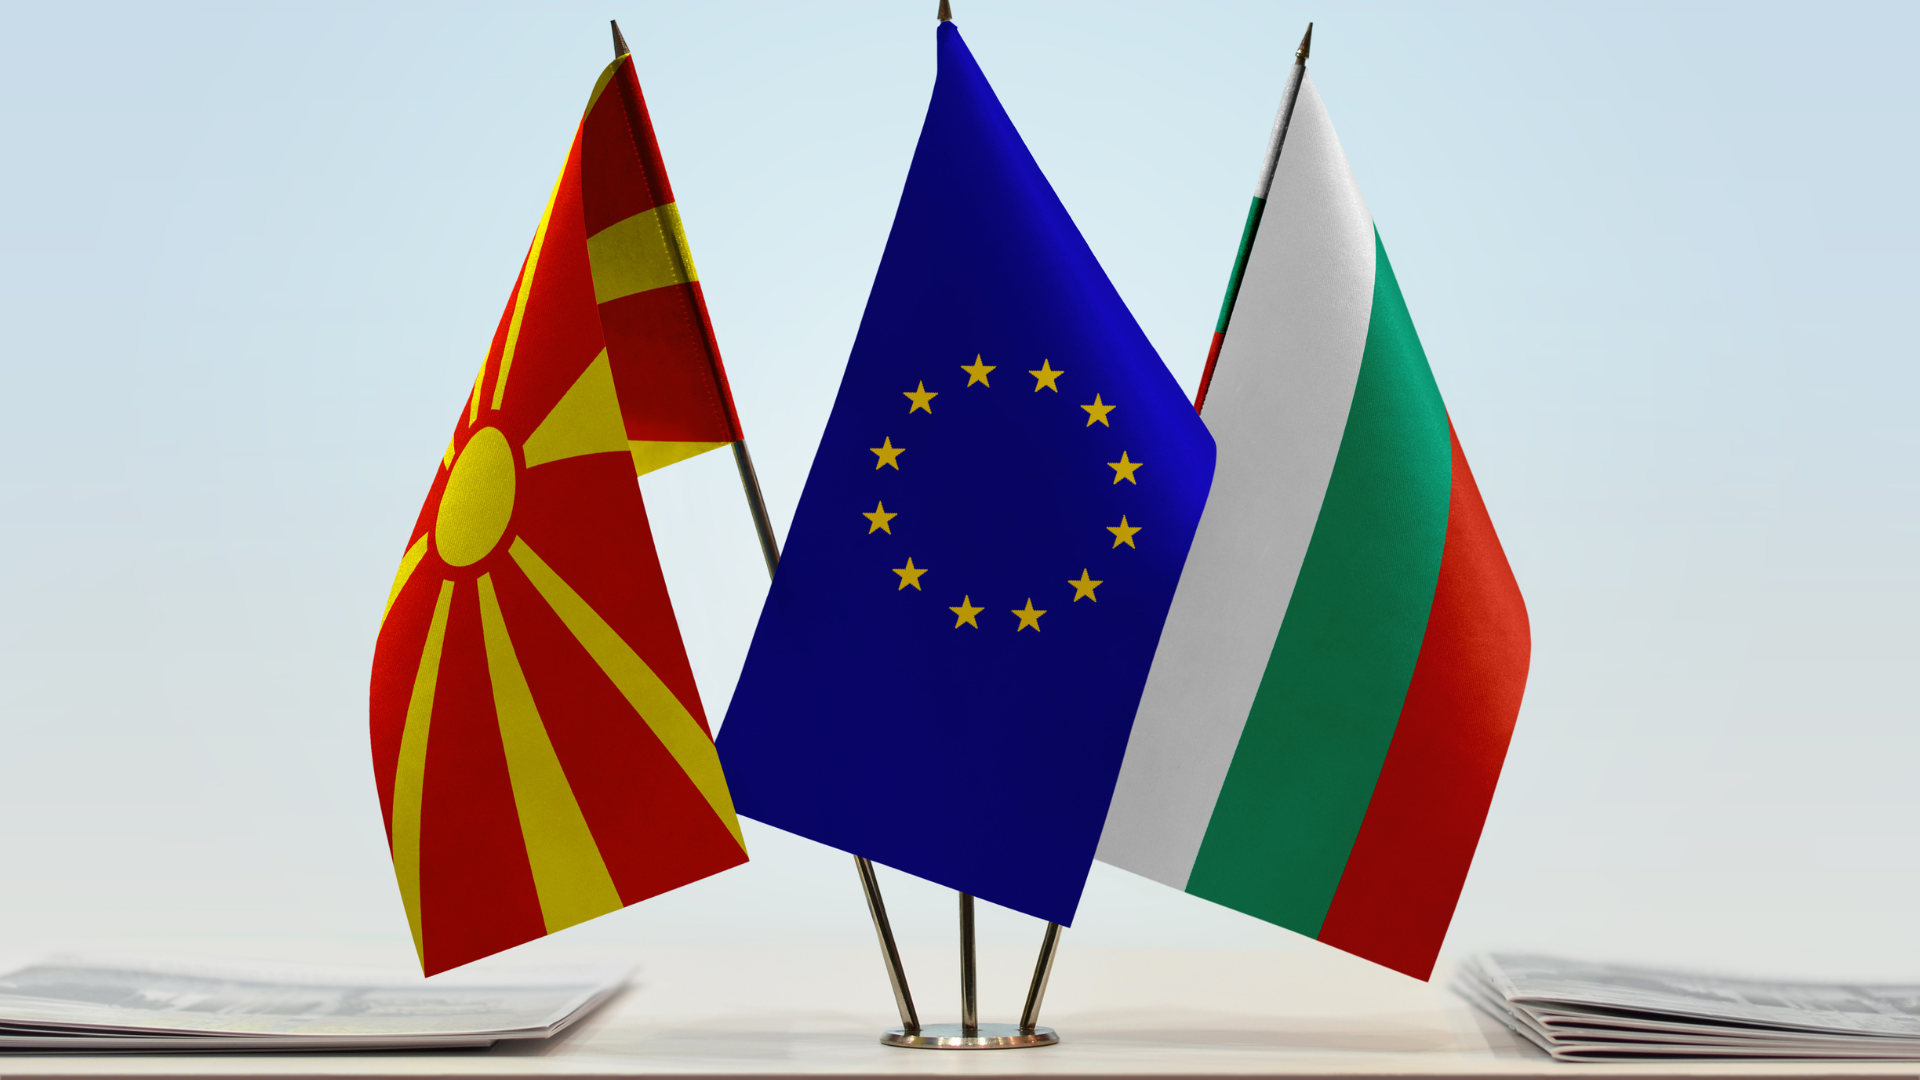 Flamuri i Maqedonisë së Veriut (RMV), Bullgarisë dhe i Bashkimit Evropian (BE). Foto: Oleksandr Filon në Canva